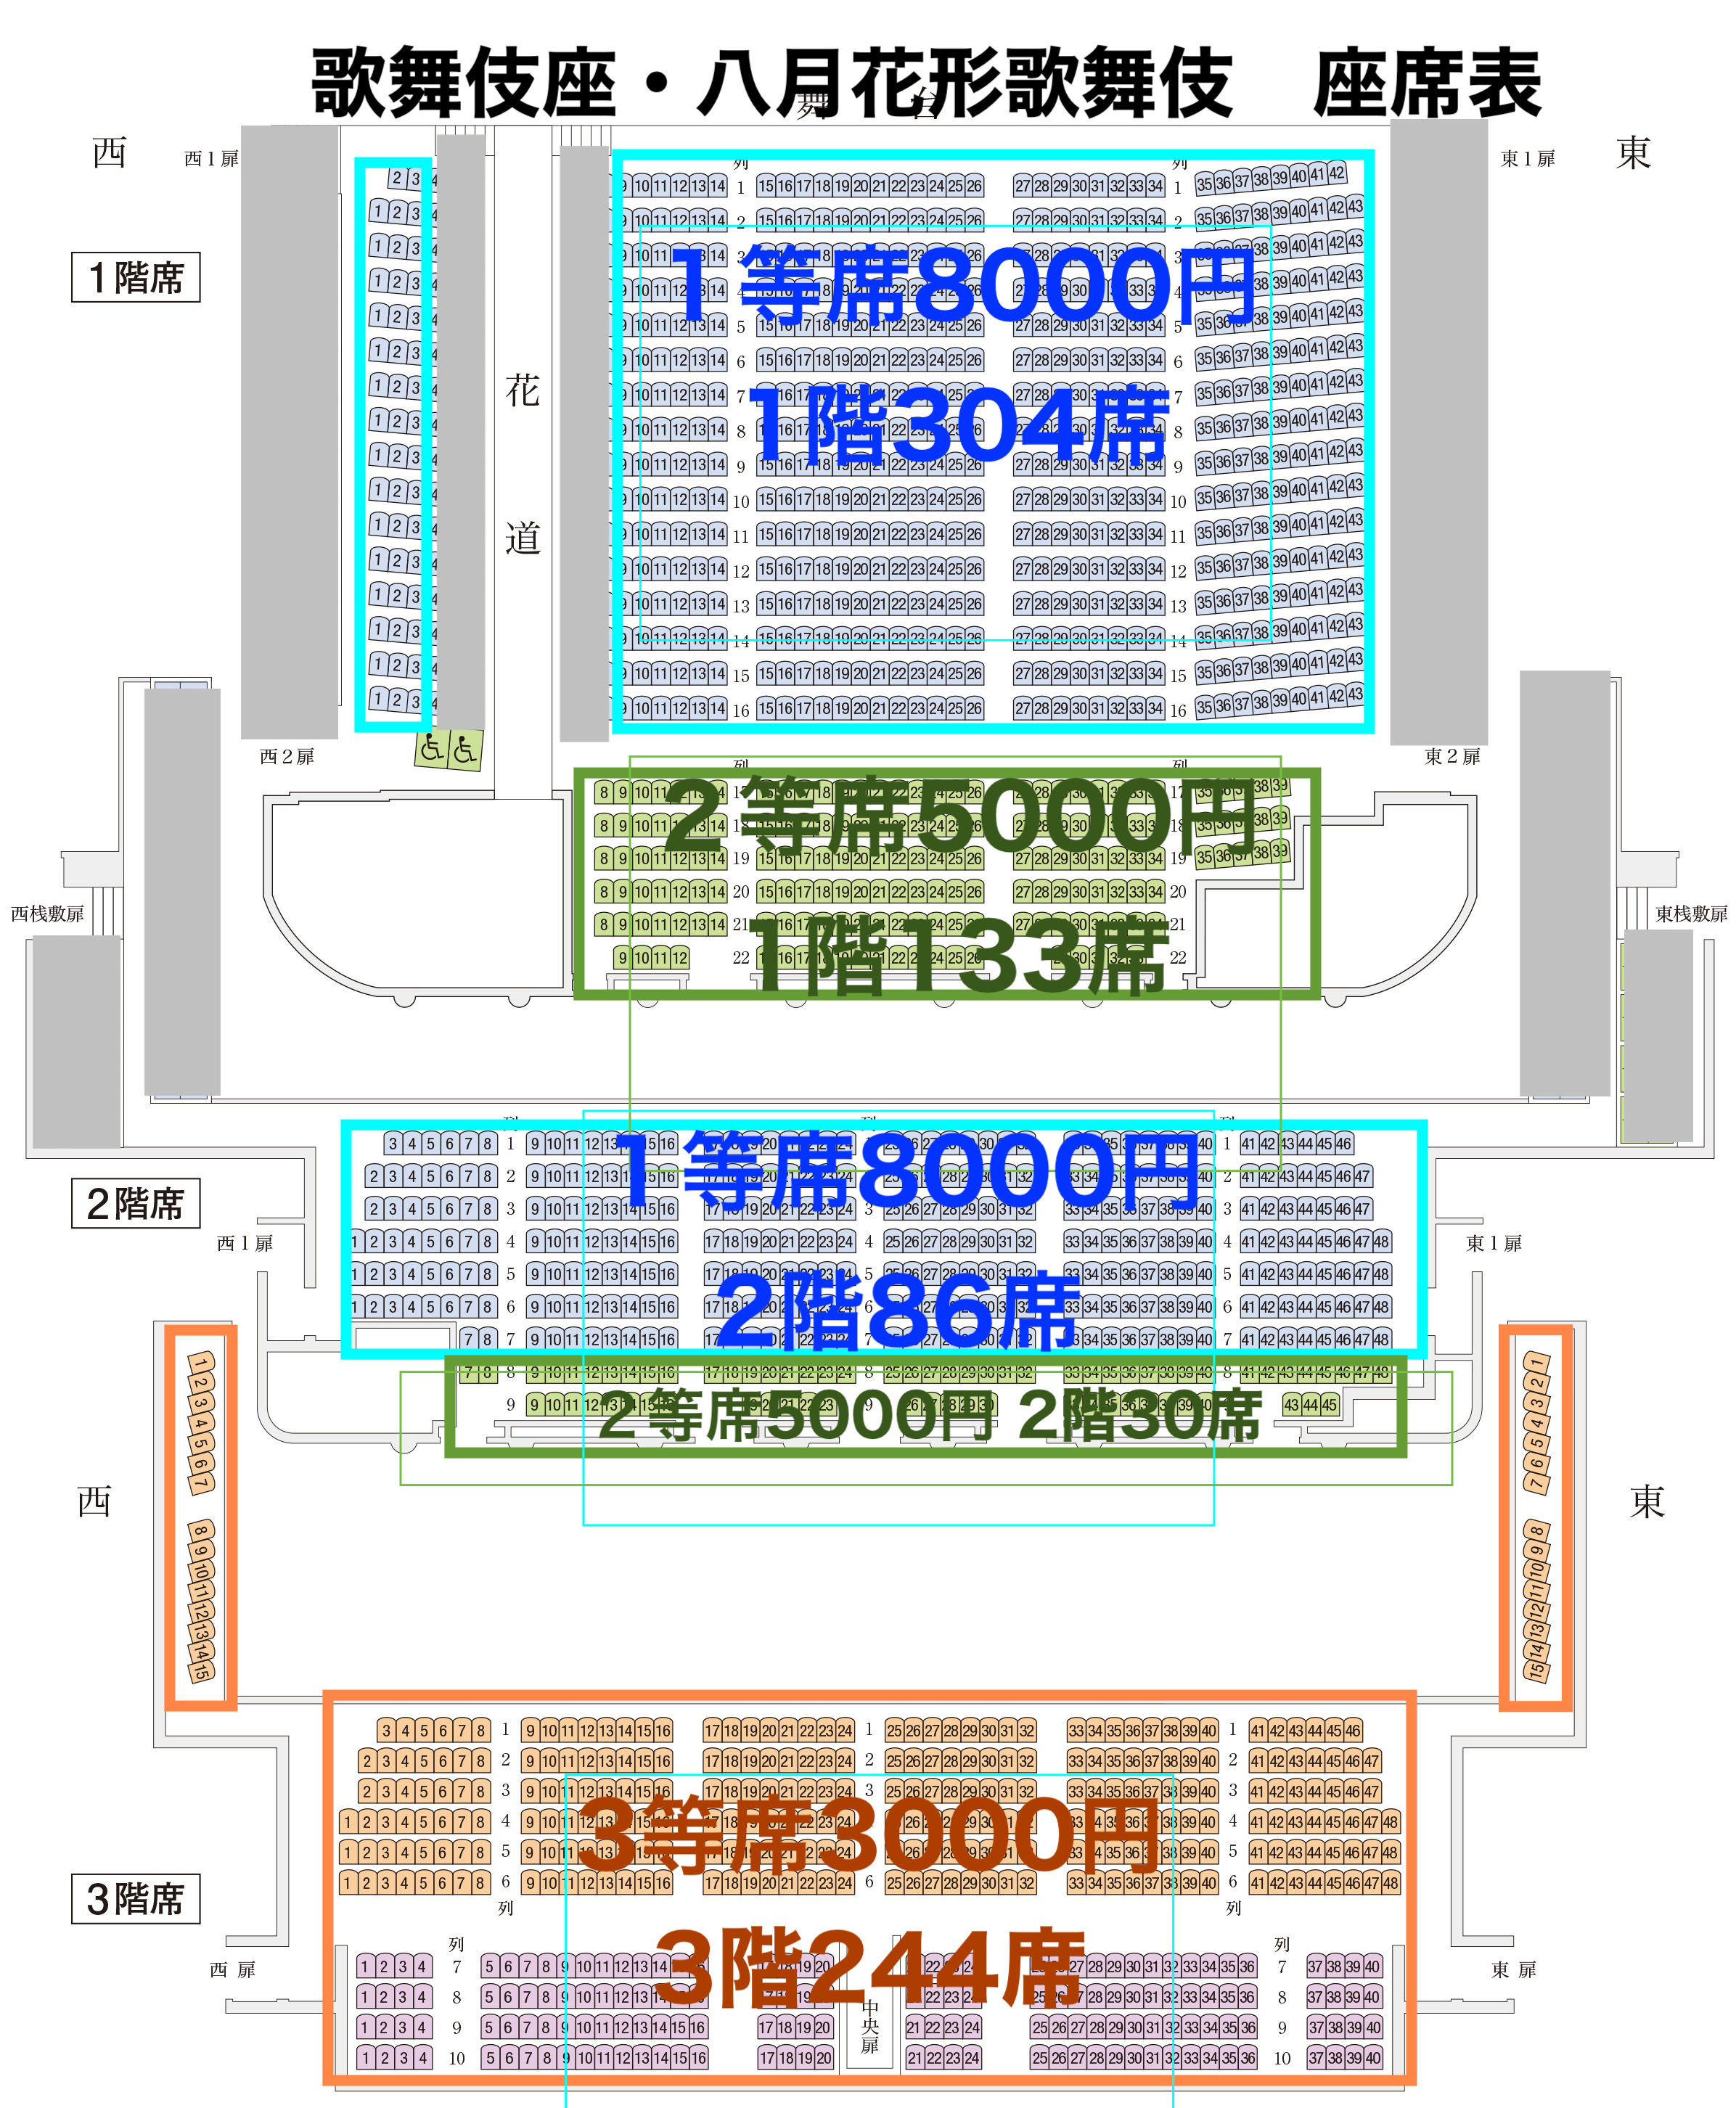 八月花形歌舞伎の座席表 総座席数1808席から823席に大幅減少（歌舞伎座） | ビギナーが行く歌舞伎＆文楽